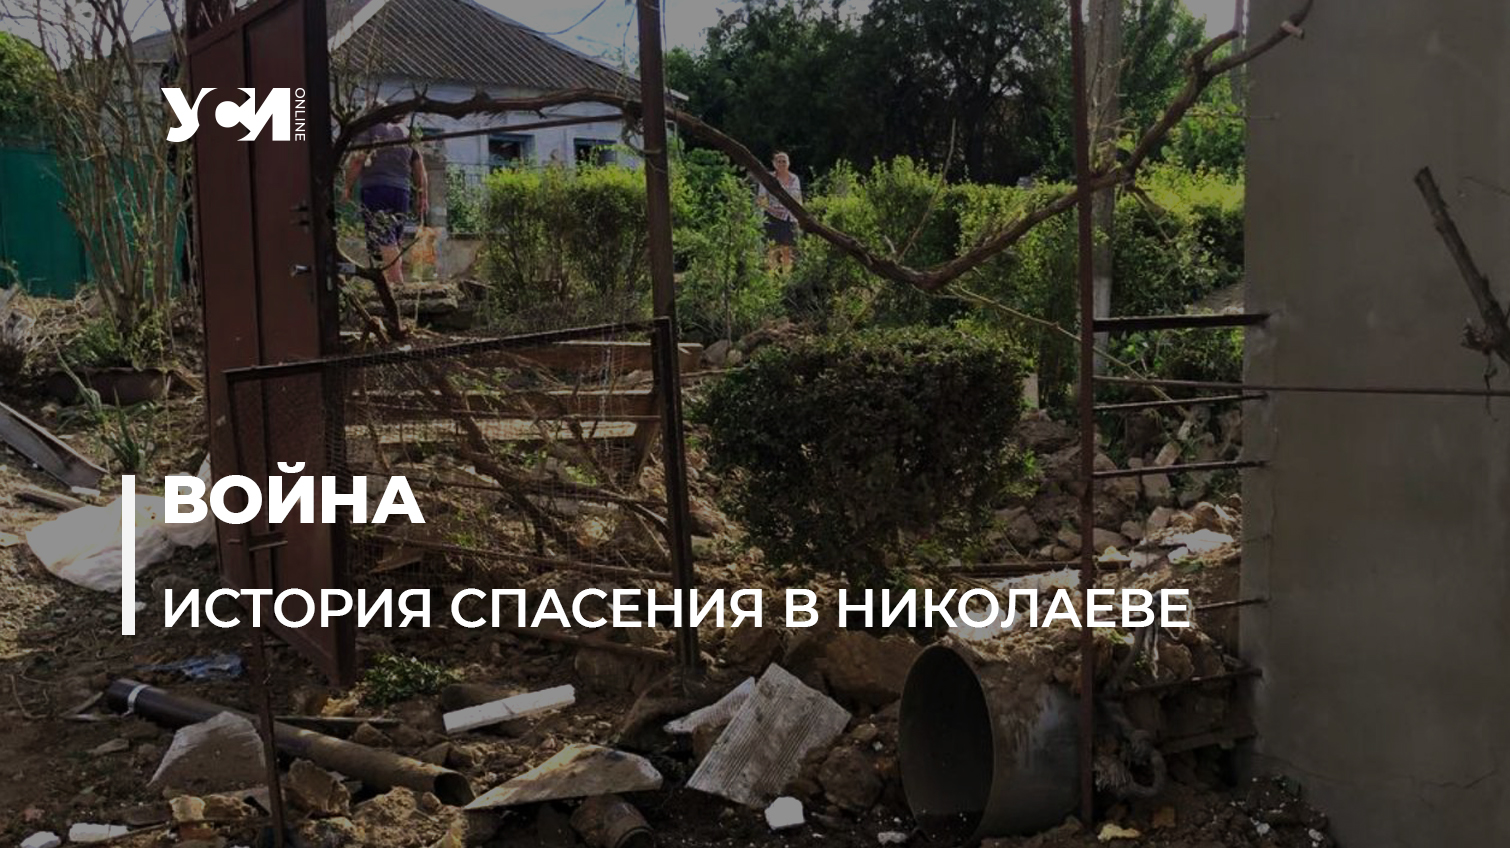 Вернулась за документами, когда в дом попал снаряд: жительница поселка под Николаевом чудом осталась жива (фото, аудио)